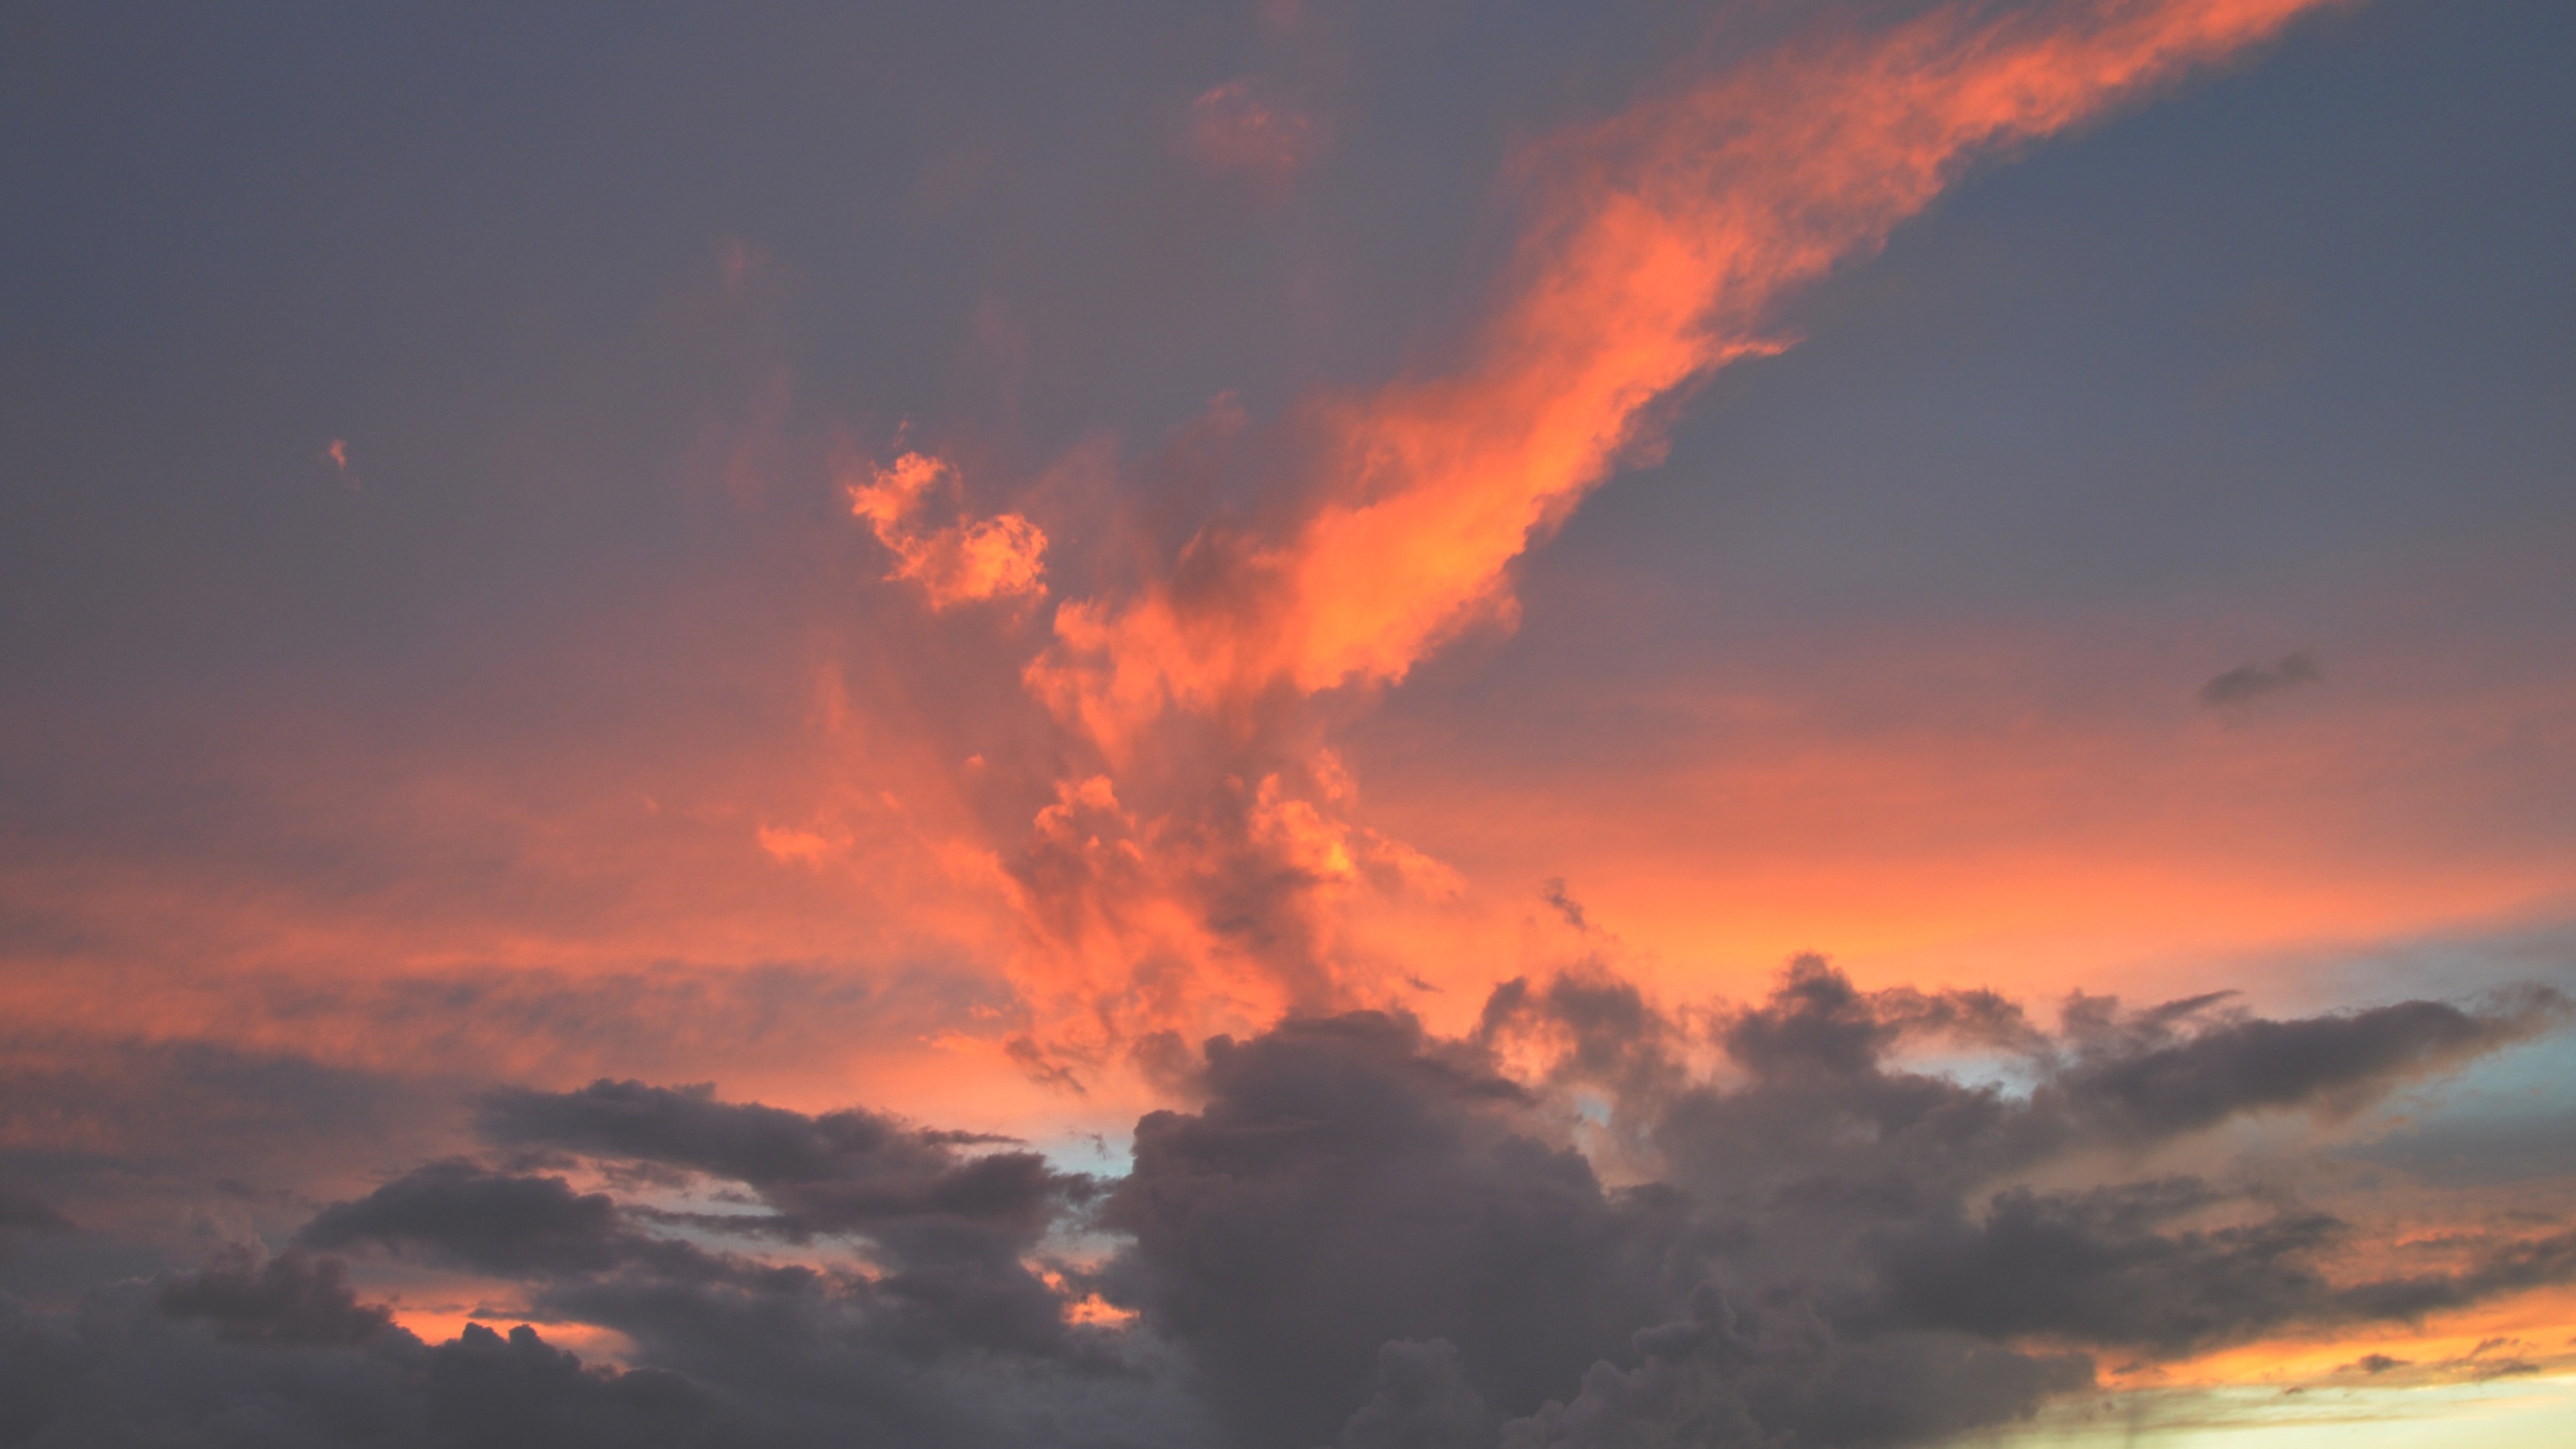 3840X2160 Resolution Clouds, Sky, Sunset 4K Wallpaper - Wallpapers Den